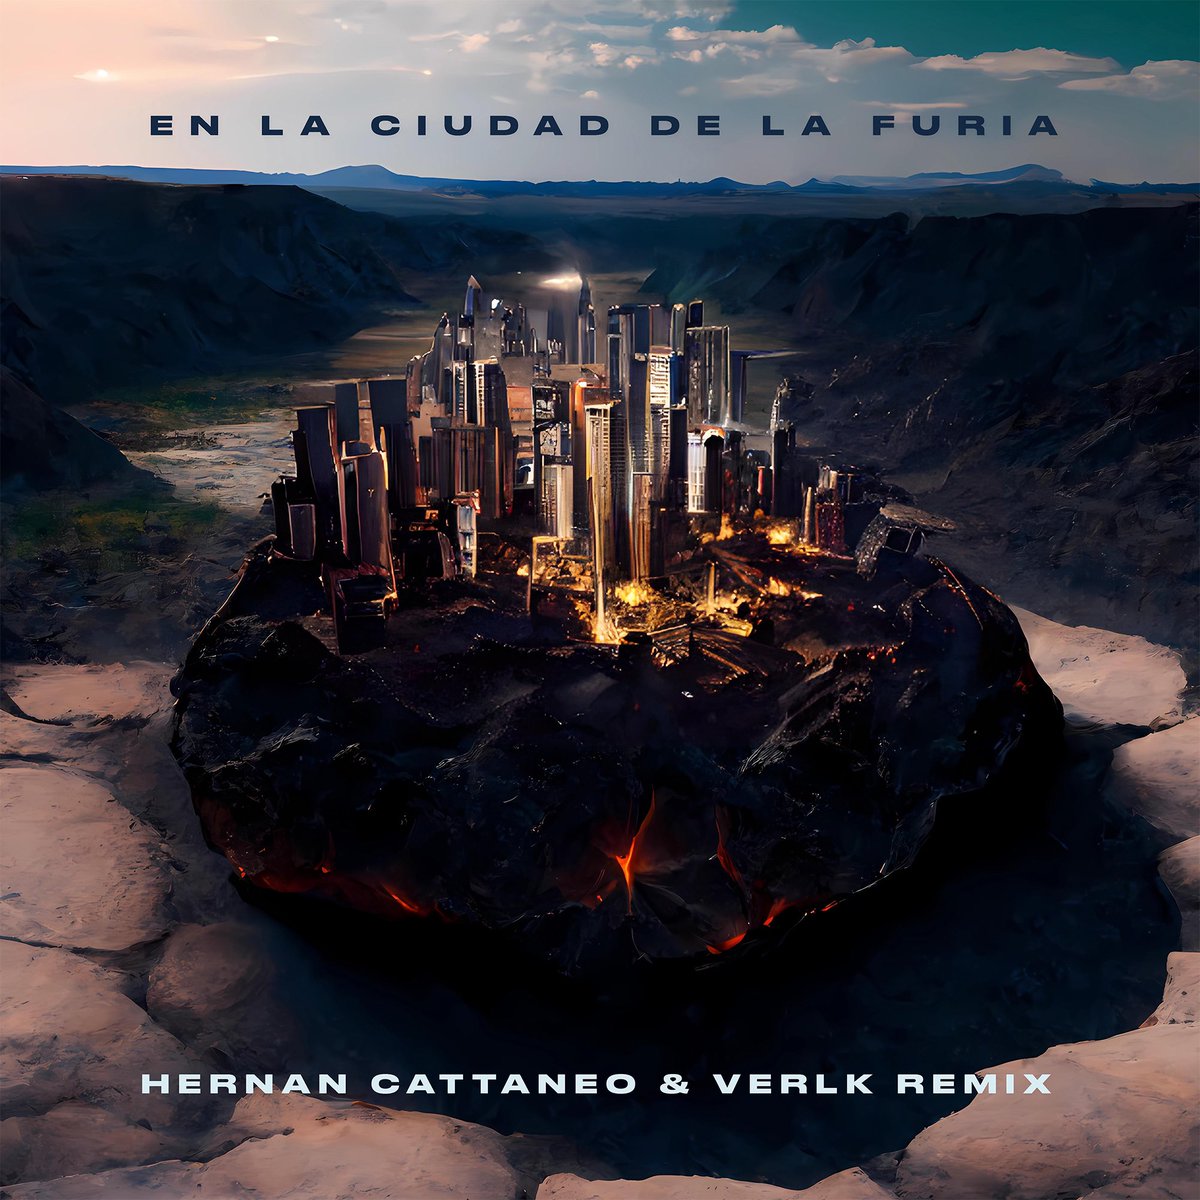 “En La Ciudad De La Furia” @djhernancattaneo & @verlkmusic remix ya disponible en todas las plataformas digitales  lnk.to/EnLaCiudadDeLa…